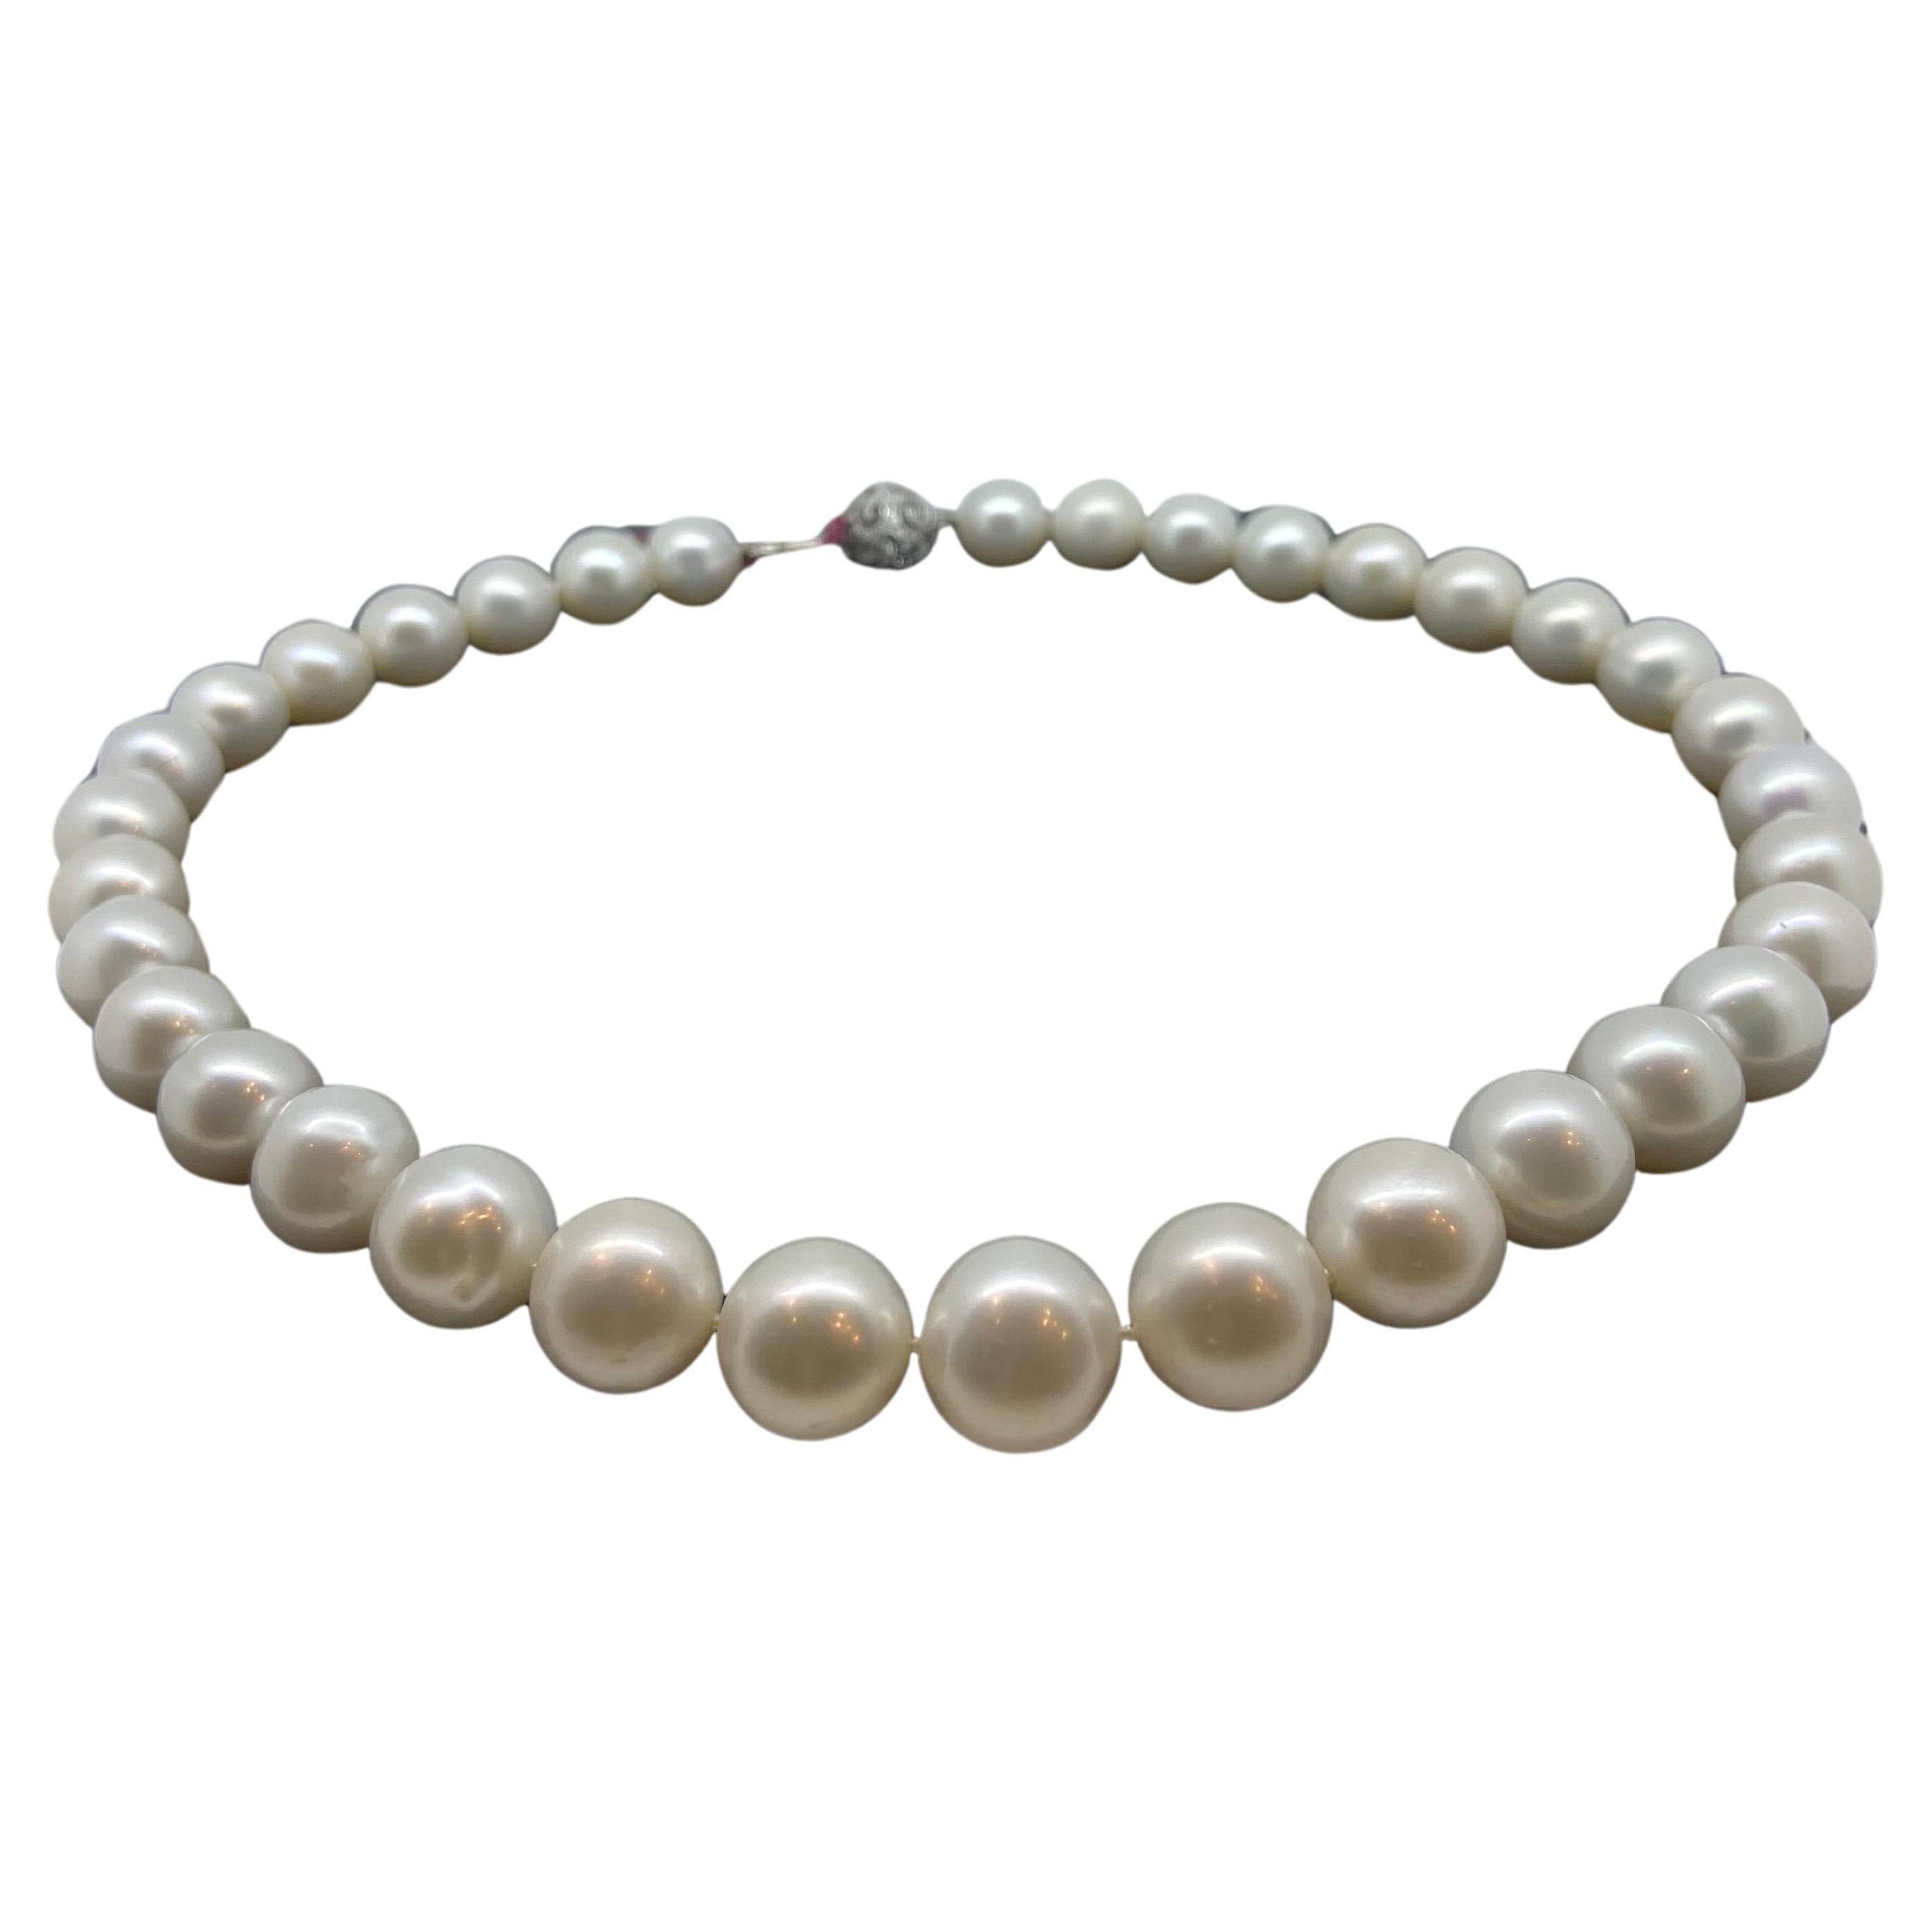 Grand collier de perles de culture de 11 mm à 14 mm. Fermoir en or et diamants. Prix de vente 4850 $ ! en vente